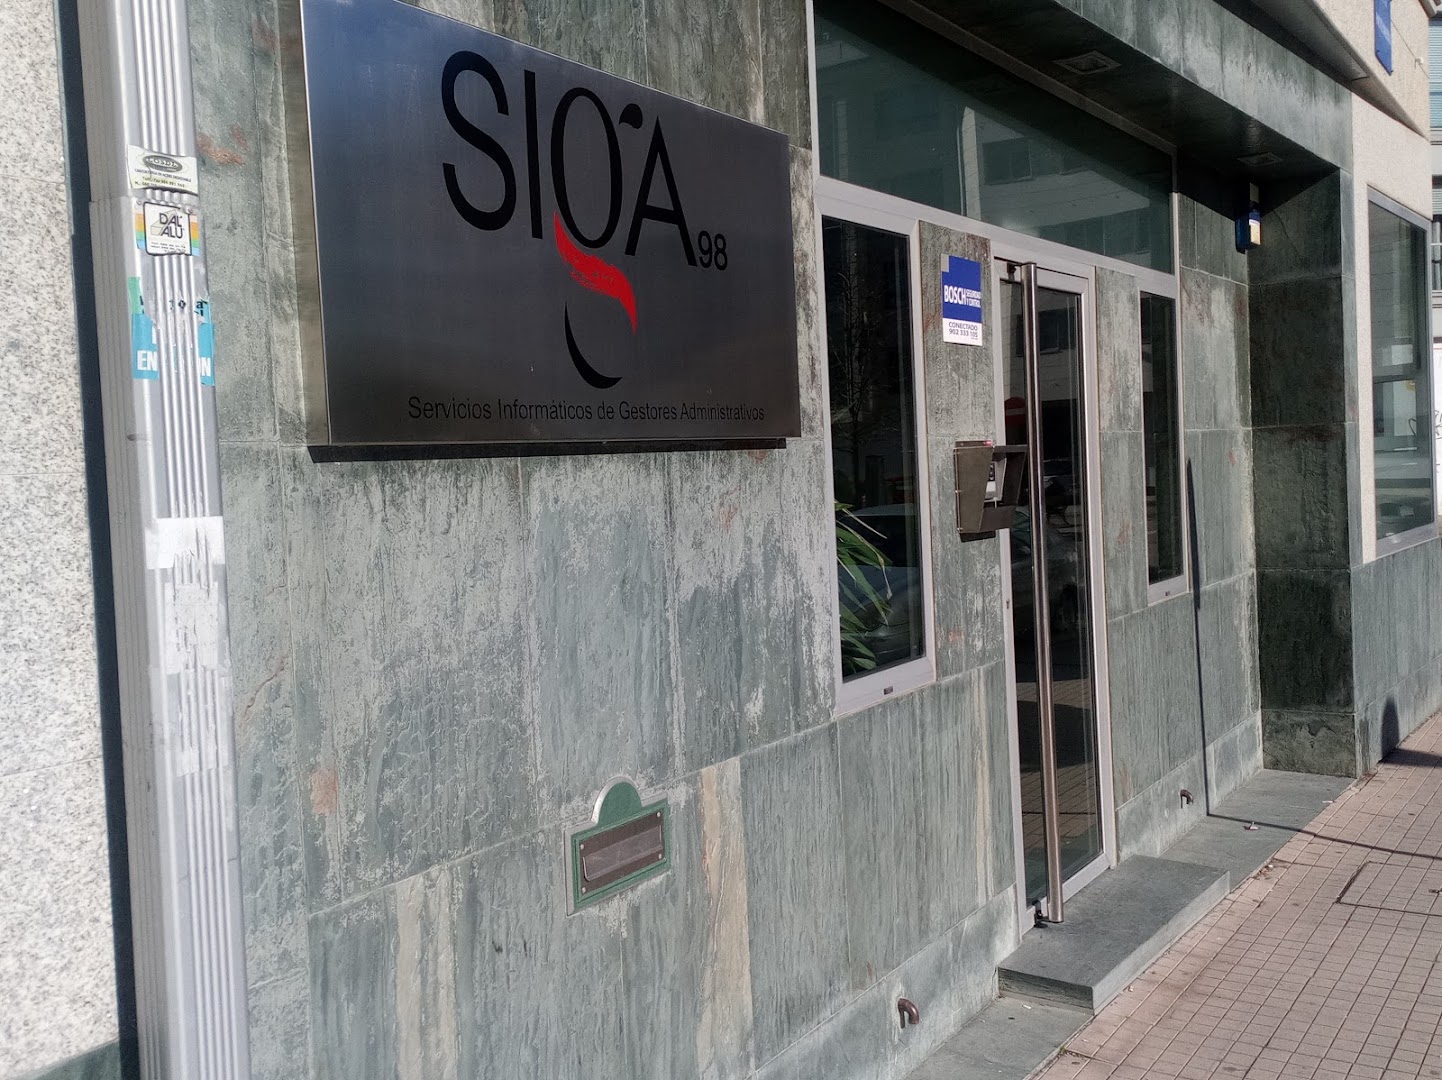 SIGA98 (Servicios Informáticos de Gestores Administrativos)